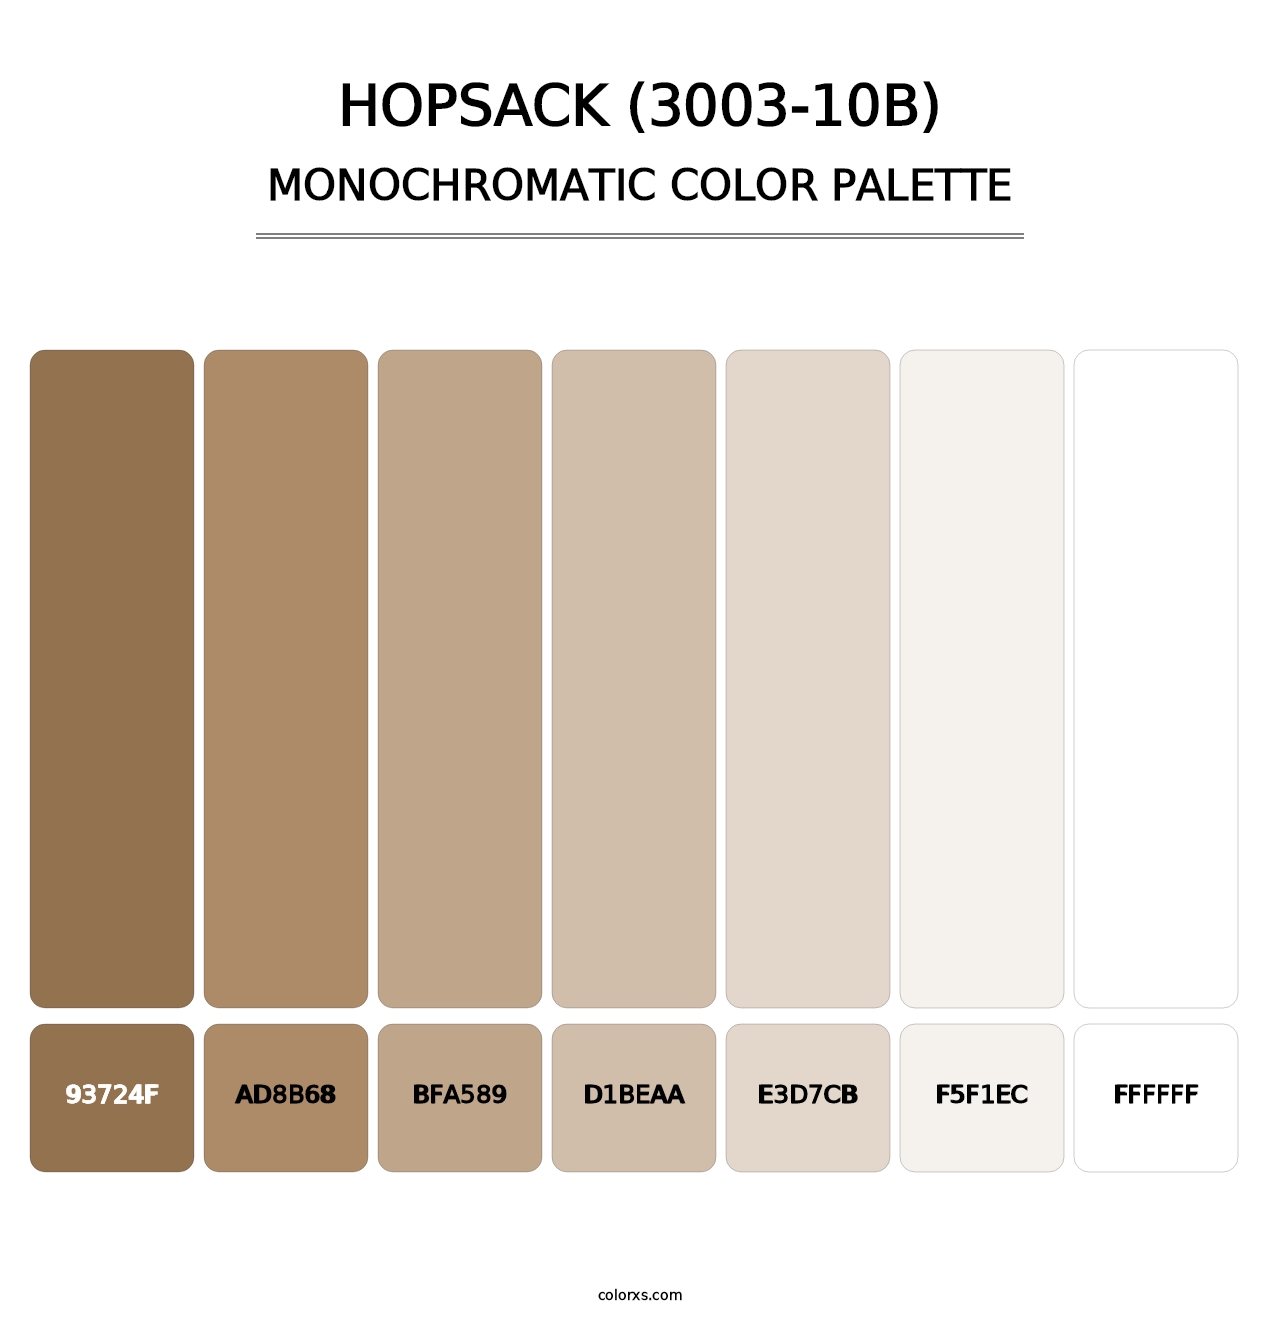 Hopsack (3003-10B) - Monochromatic Color Palette